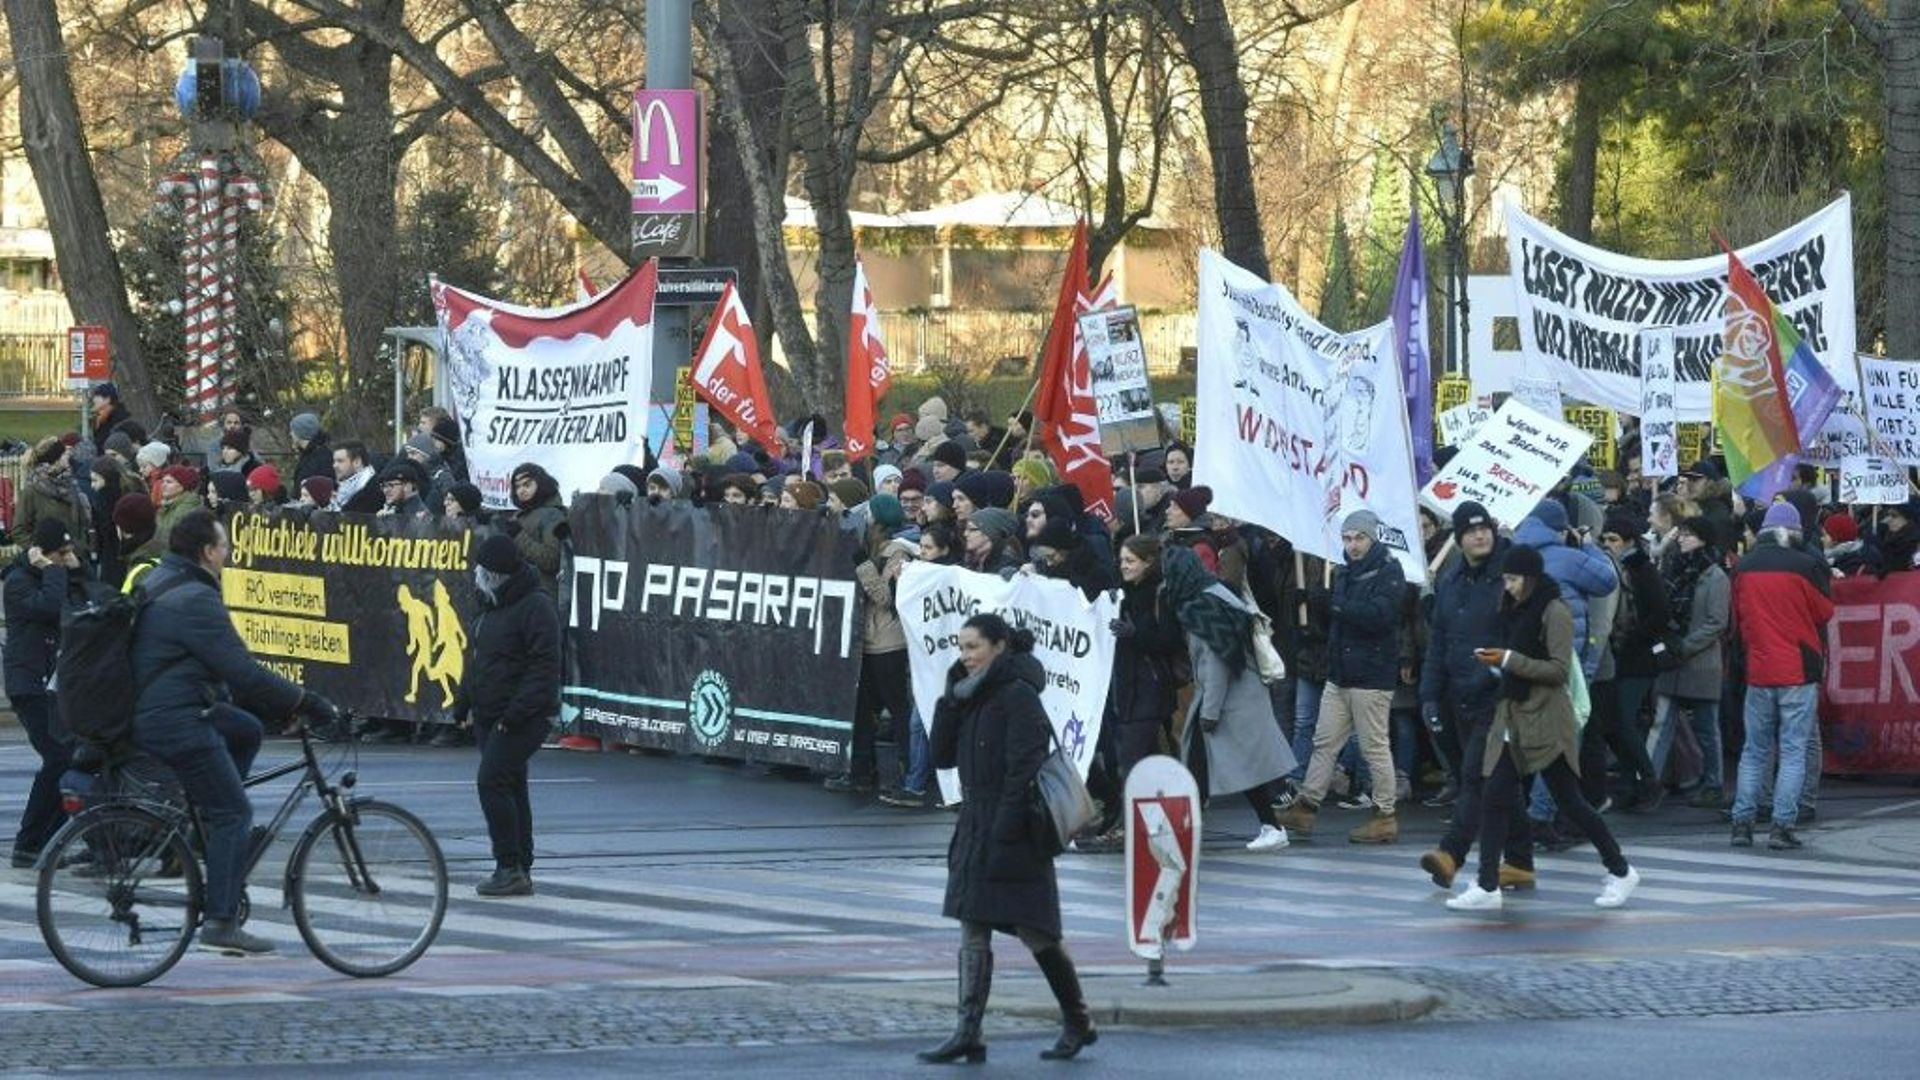 Quelque 2.000 personnes ont manifesté le 18 décembre 2017 à Vienne contre le nouveau gouvernement autrichien de coalition entre les conservateurs et l'extrême droite